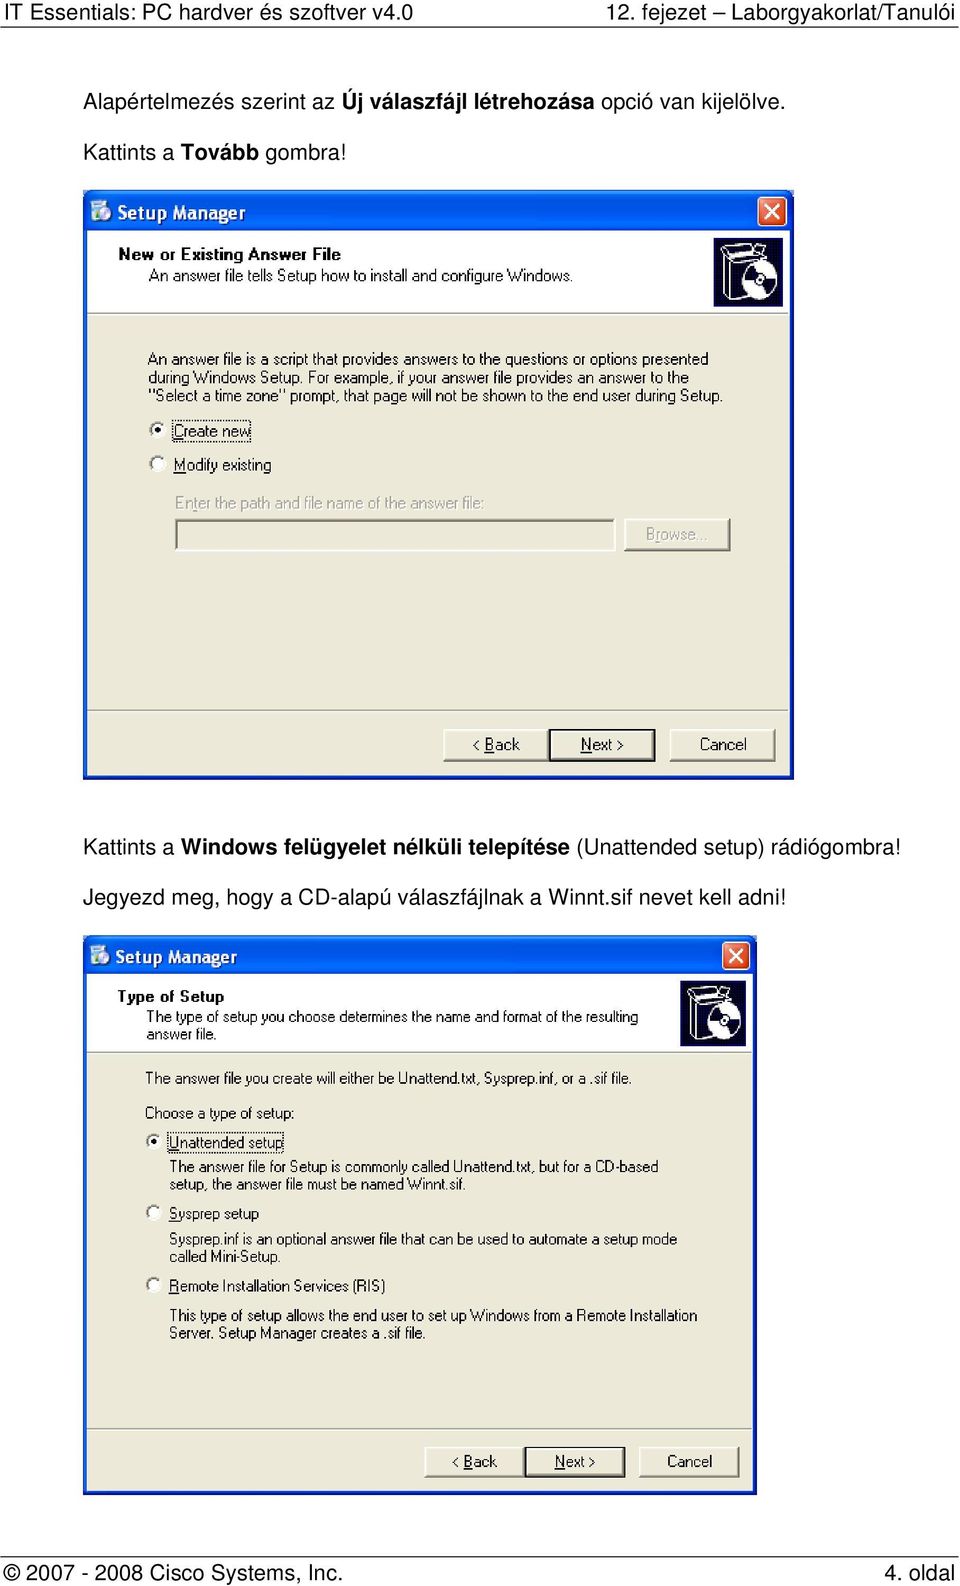 Kattints a Windows felügyelet nélküli telepítése (Unattended setup)